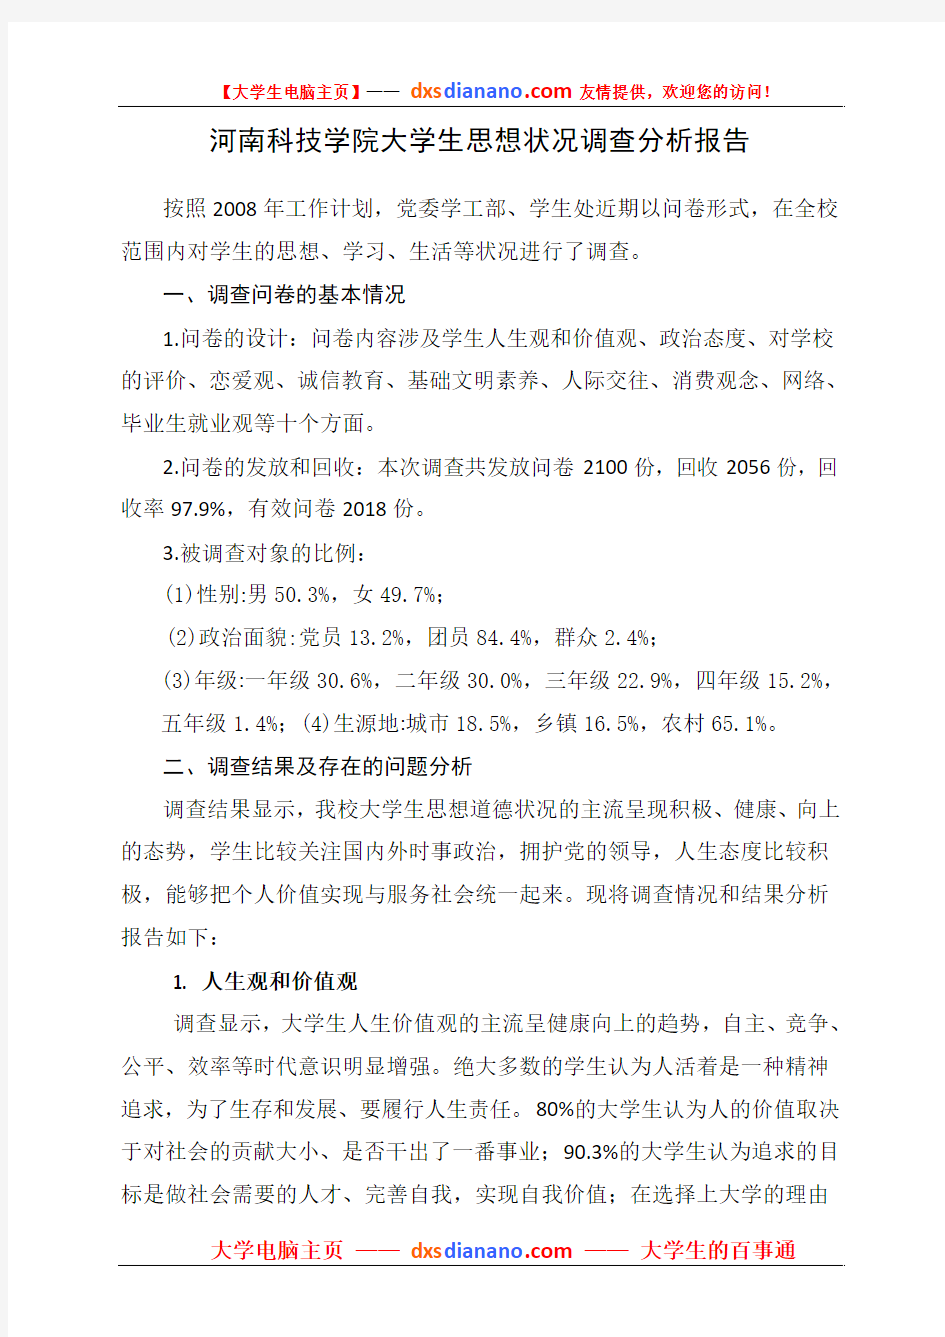 河南科技学院大学生思想状况调查分析报告